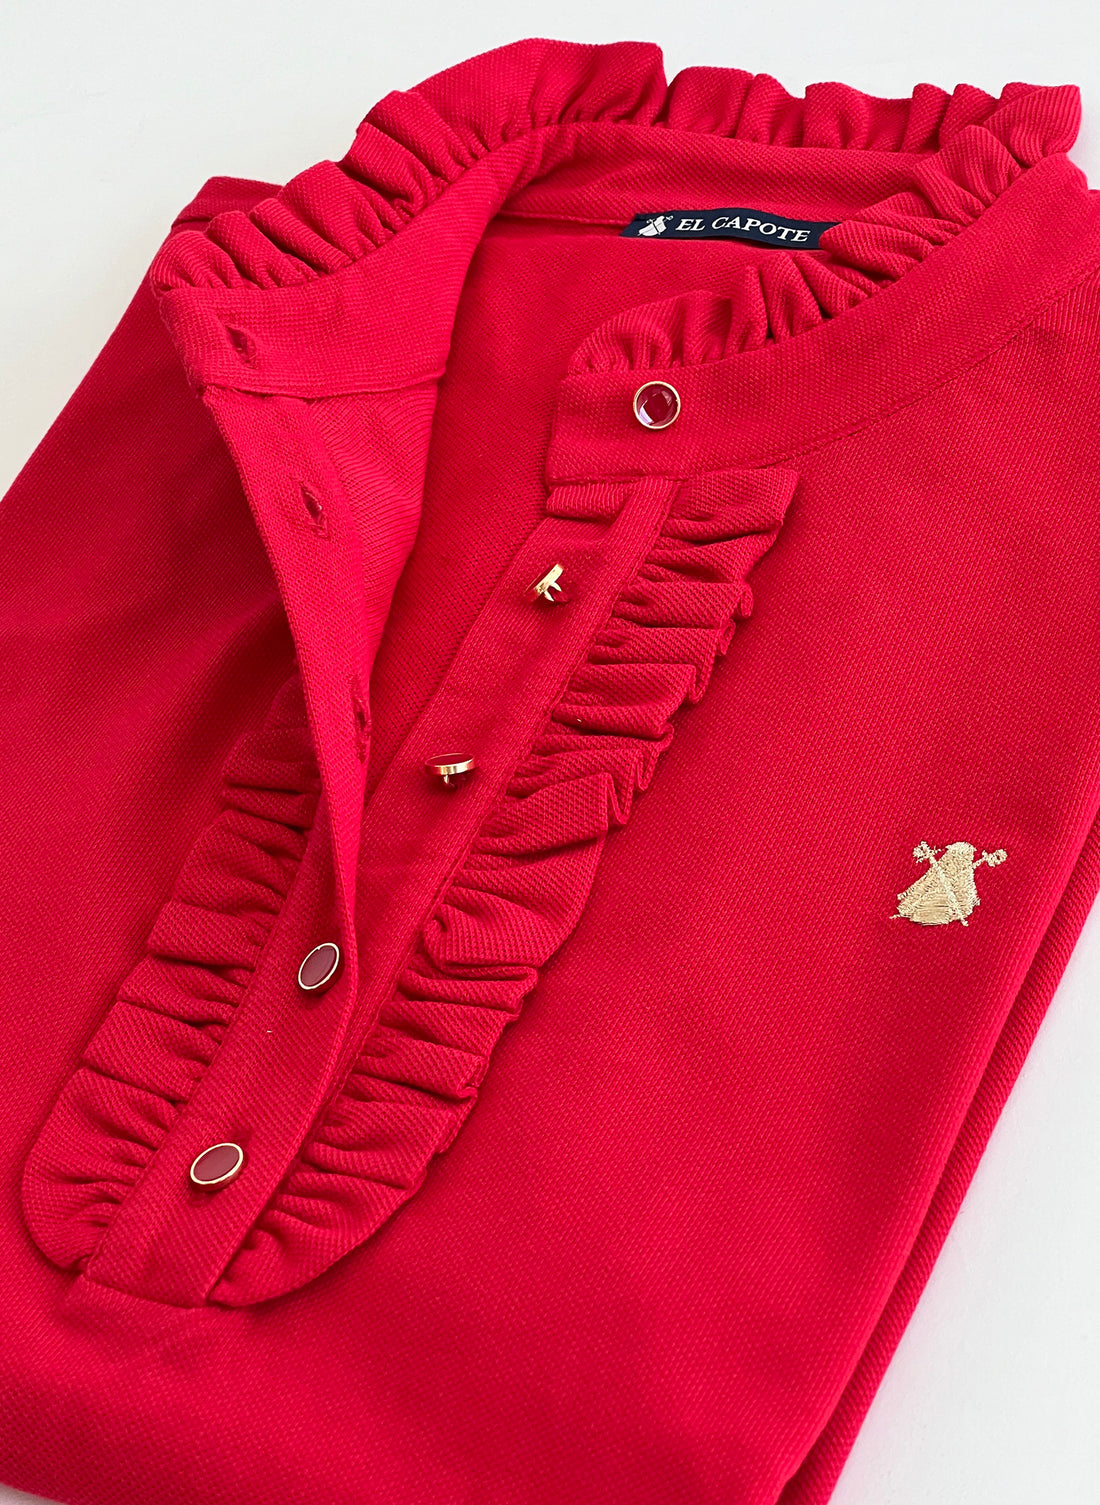 Women's Red Polo Shirt with Ruffles